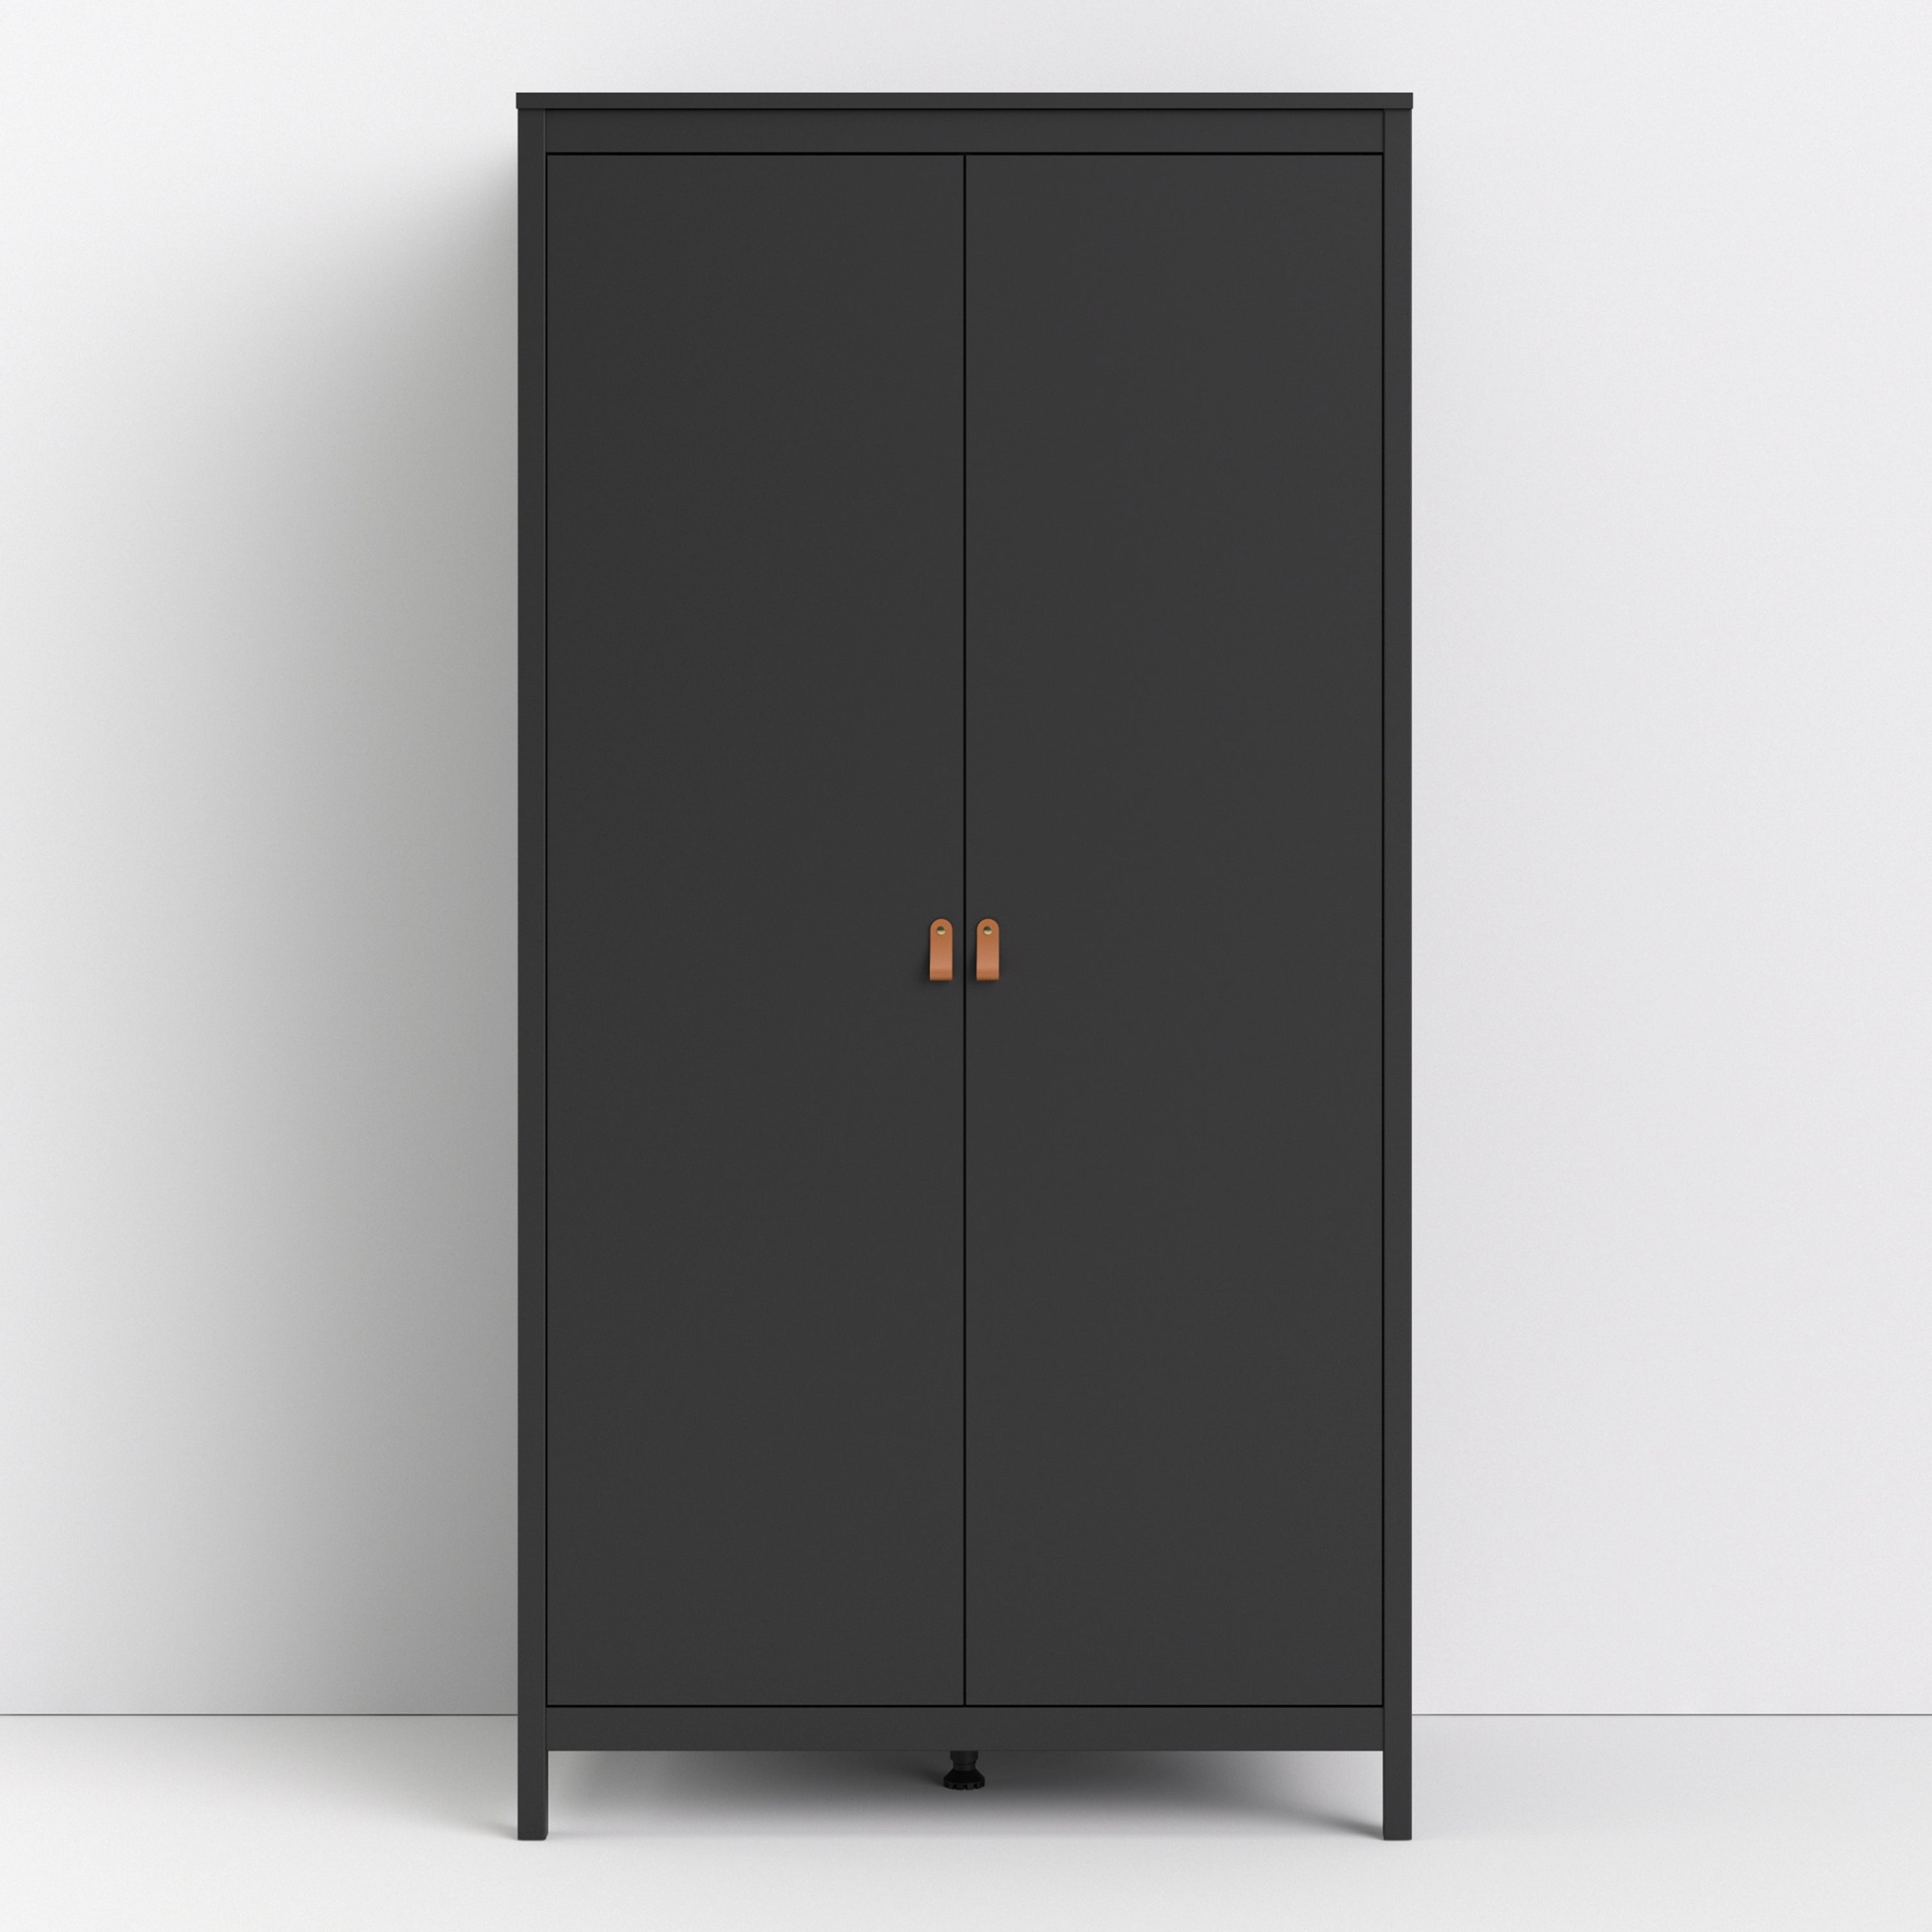 Barcelona Wardrobe with 2 Doors in Matt Black Furniture To Go Ltd